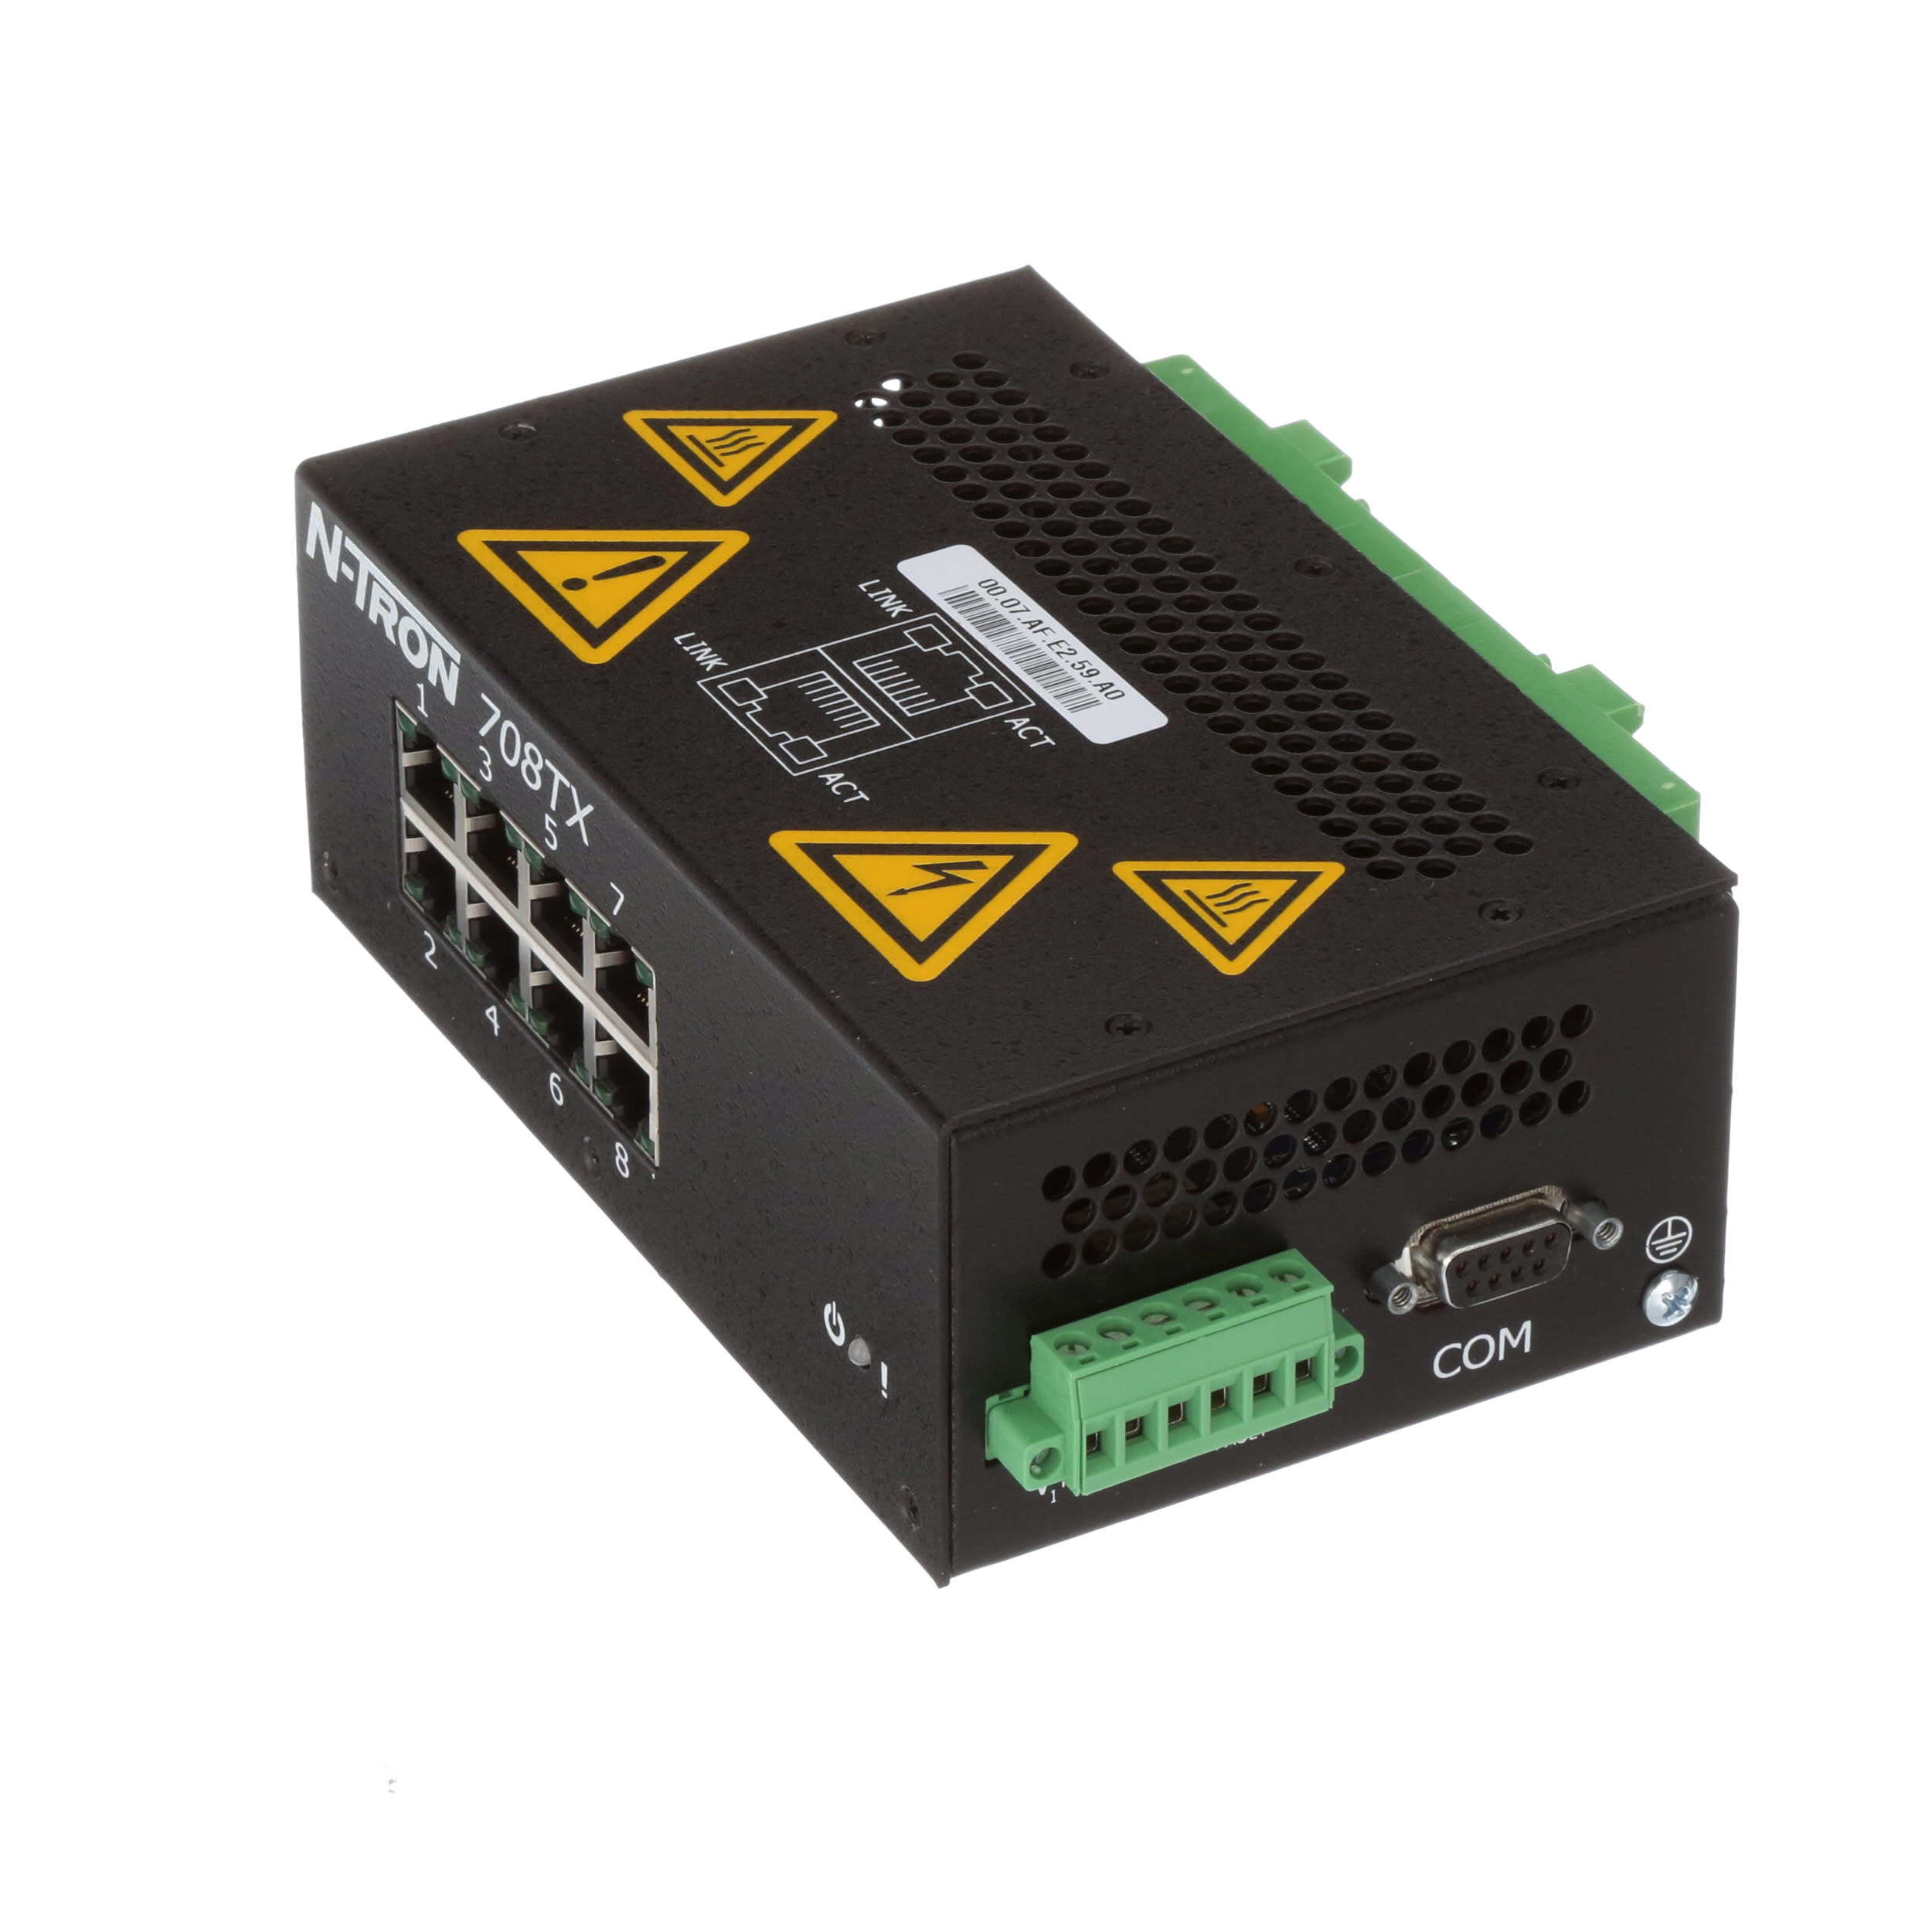 N-TRON 708TX 8-Port Industrial Ethernet Switch 10-30V                     2J GII 